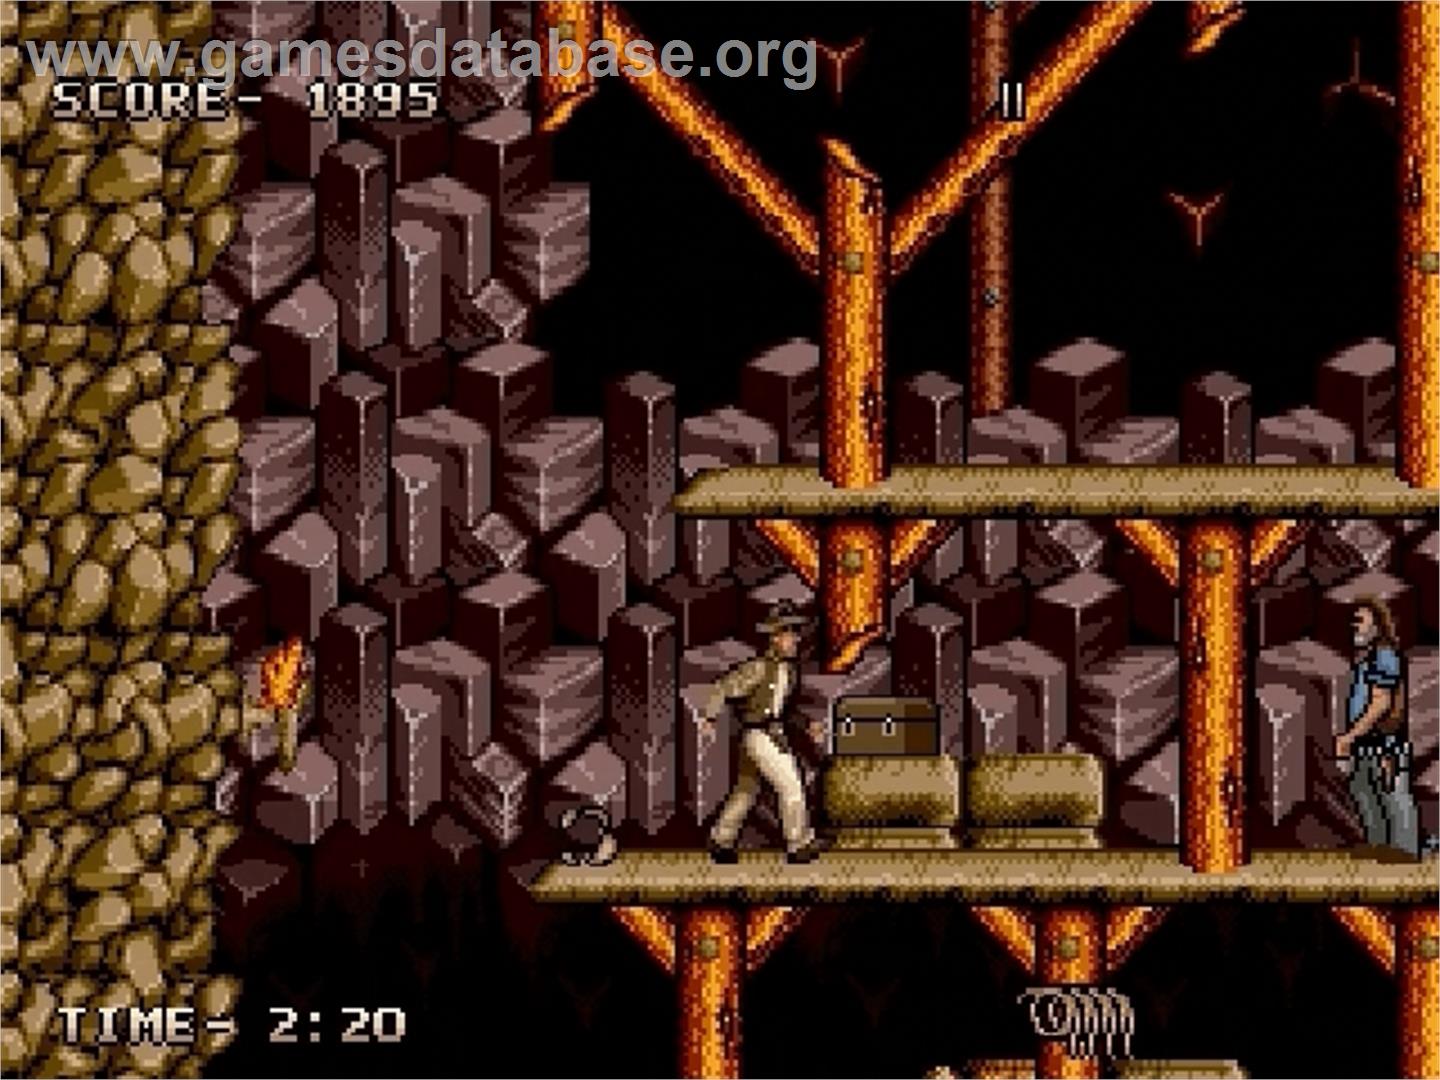 Indiana Jones and the Last Crusade: The Action Game - Sega Genesis - Artwork - In Game